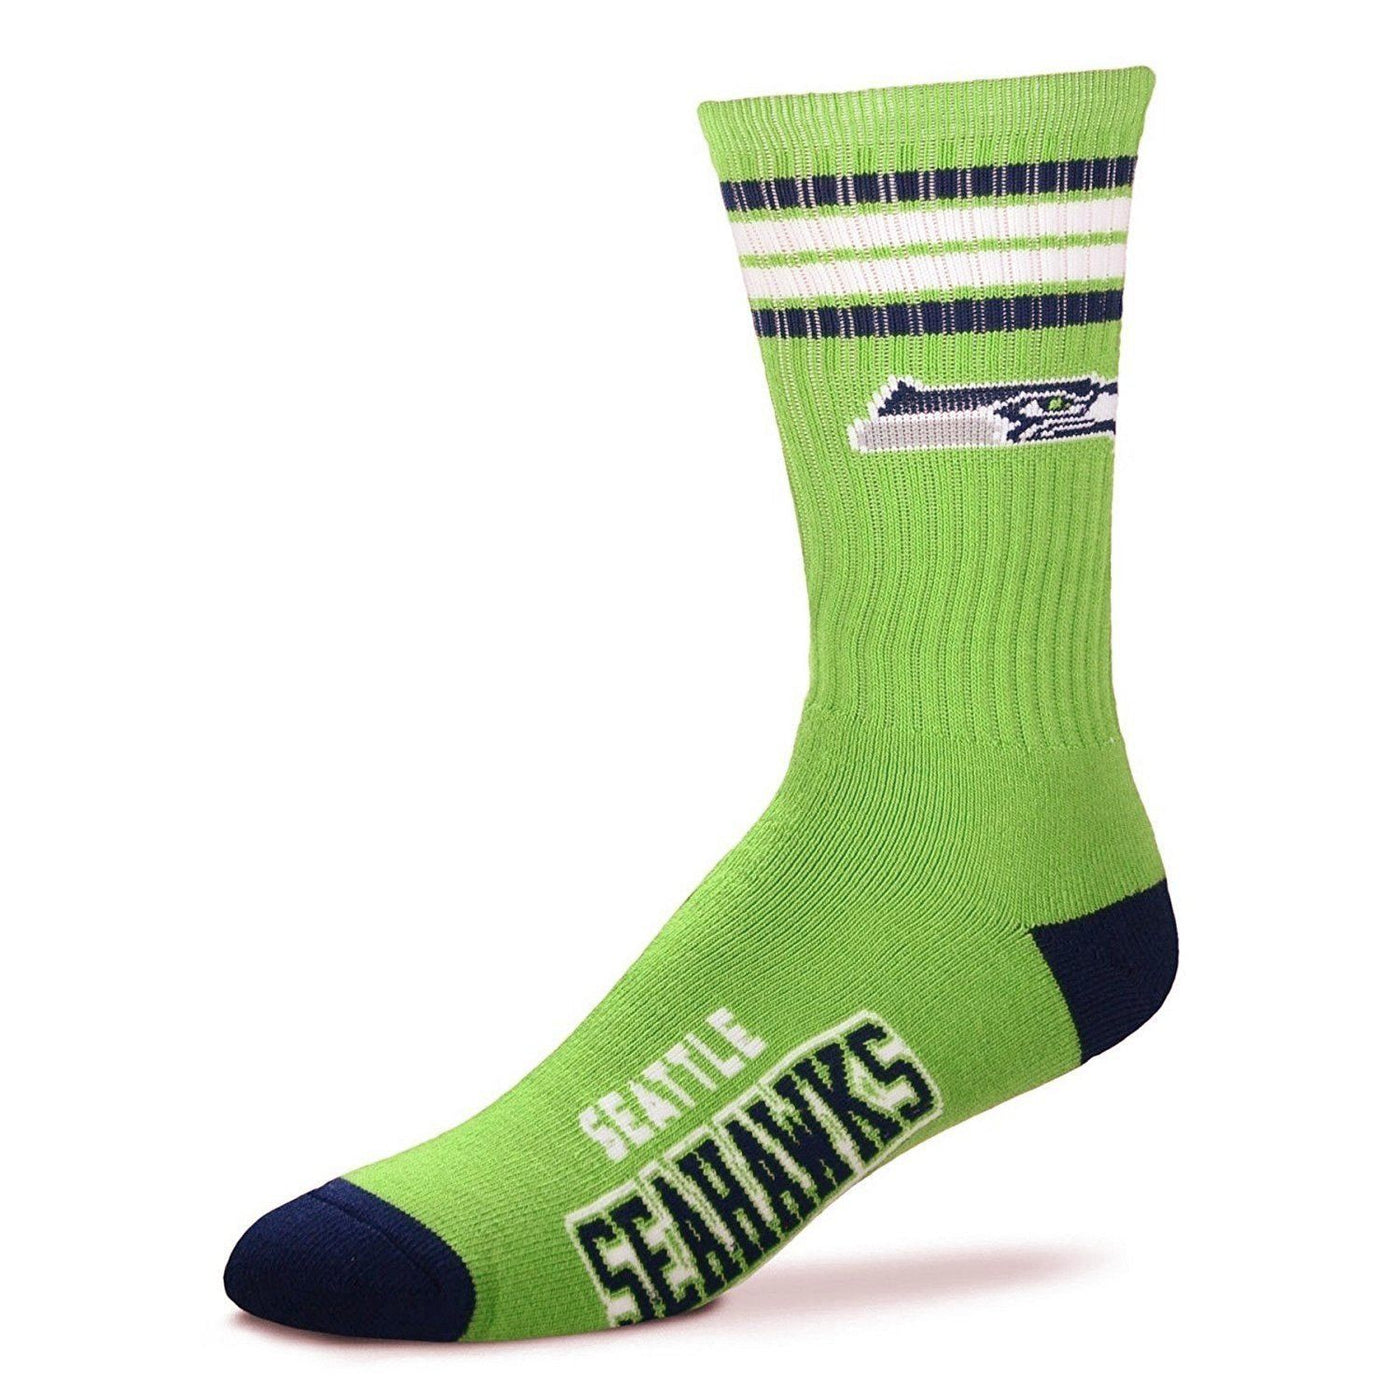 For Bare Feet - Seattle Seahawks NFL Crew Socks | Men's - Knock Your Socks Off